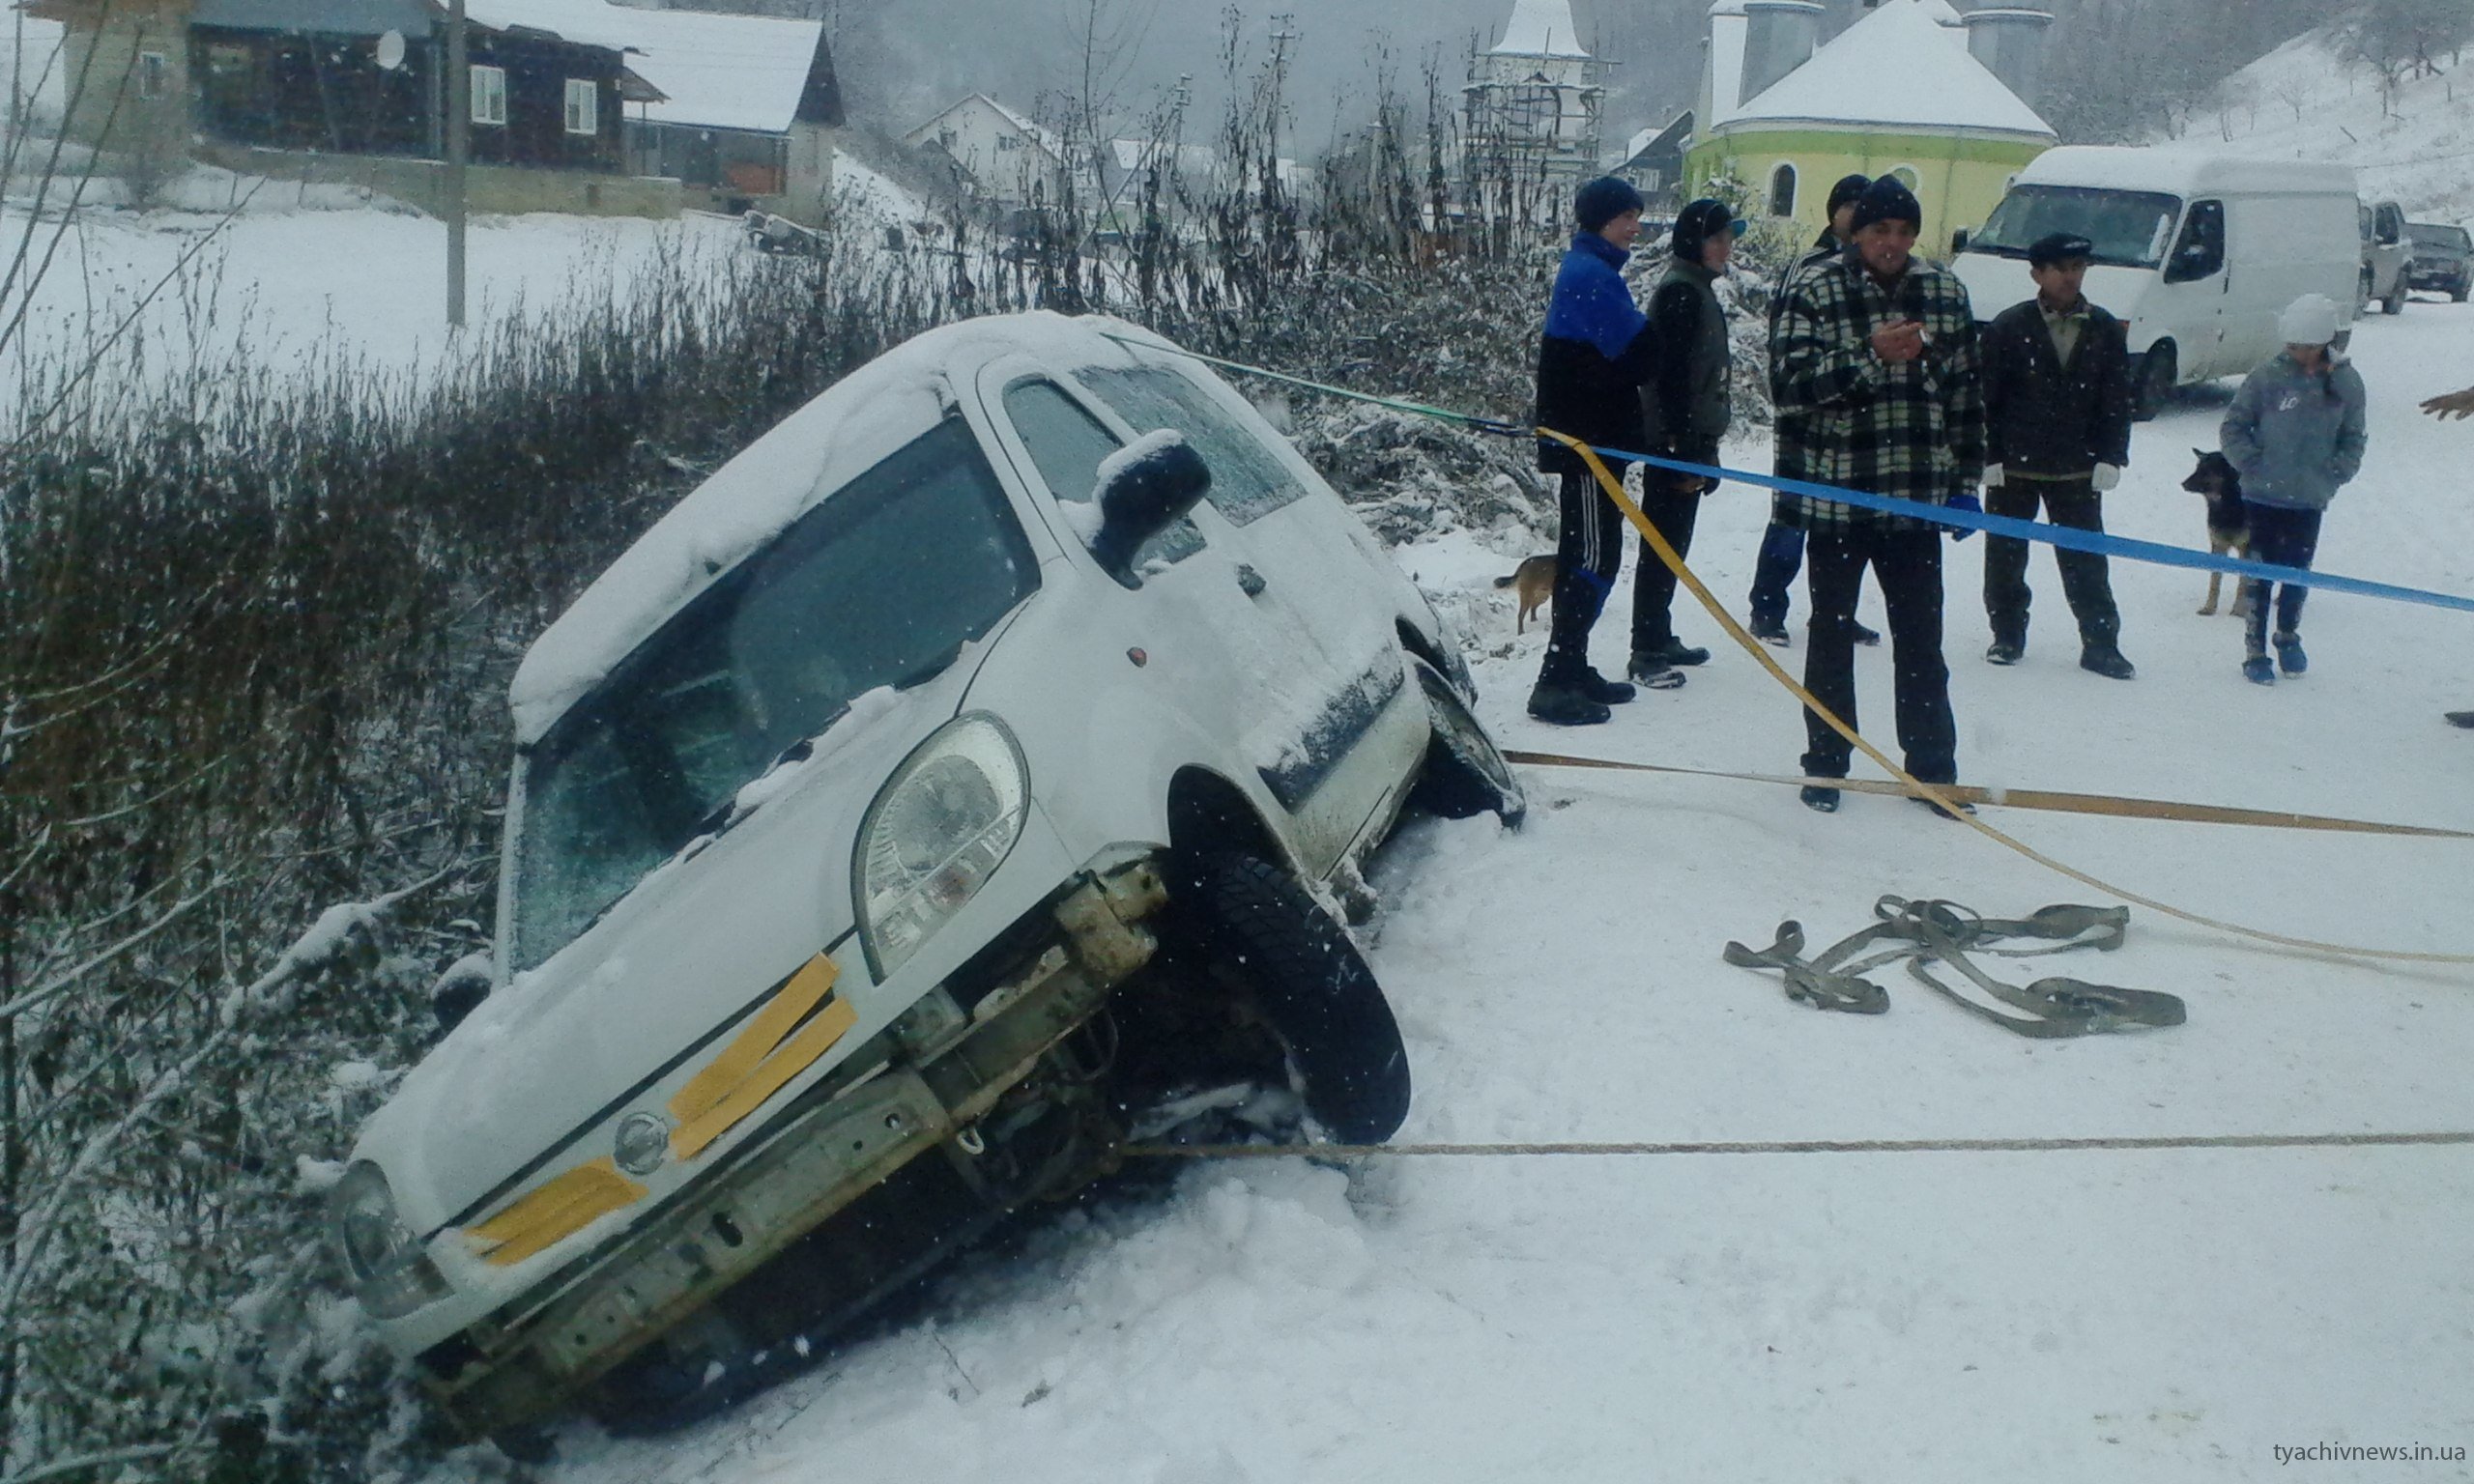 Сьогодні на Тячівщині автомобіль з 4-ма пасажирами знесло на узбіччя дороги.